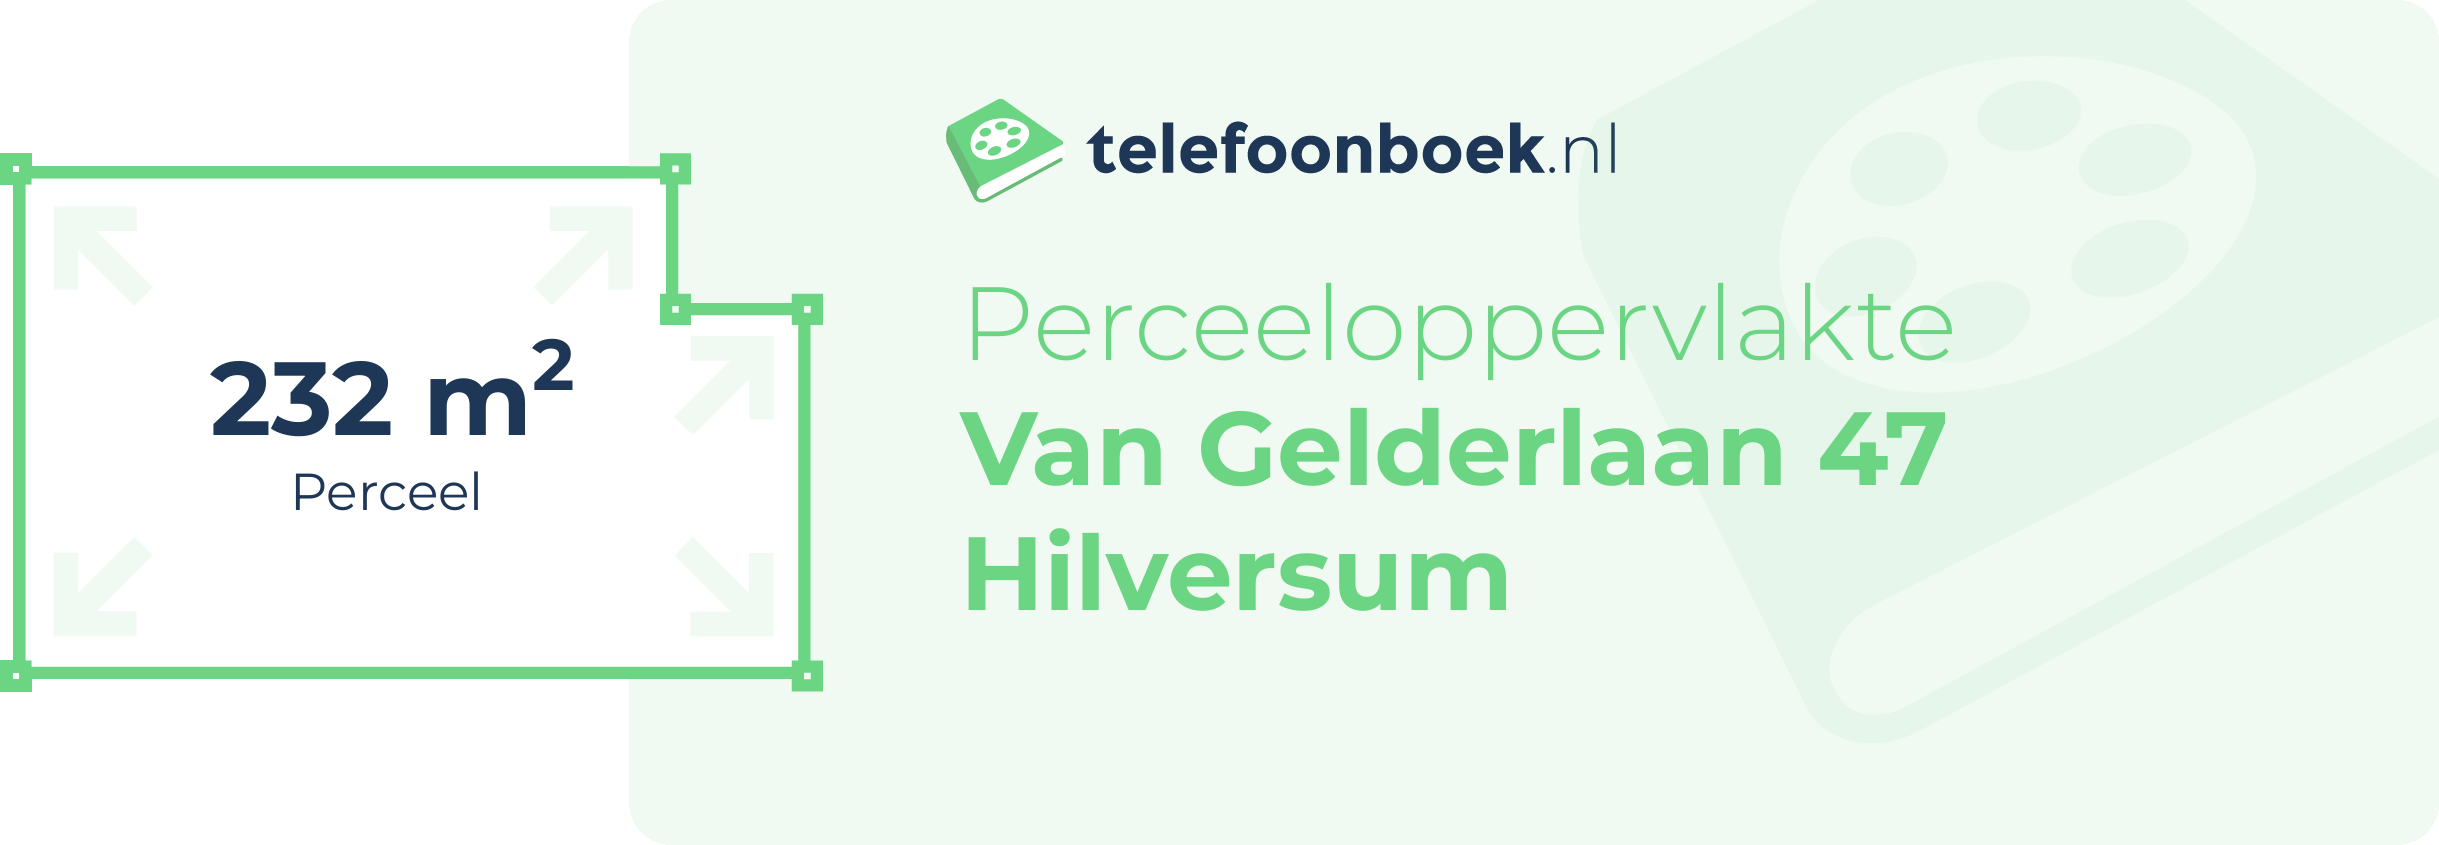 Perceeloppervlakte Van Gelderlaan 47 Hilversum